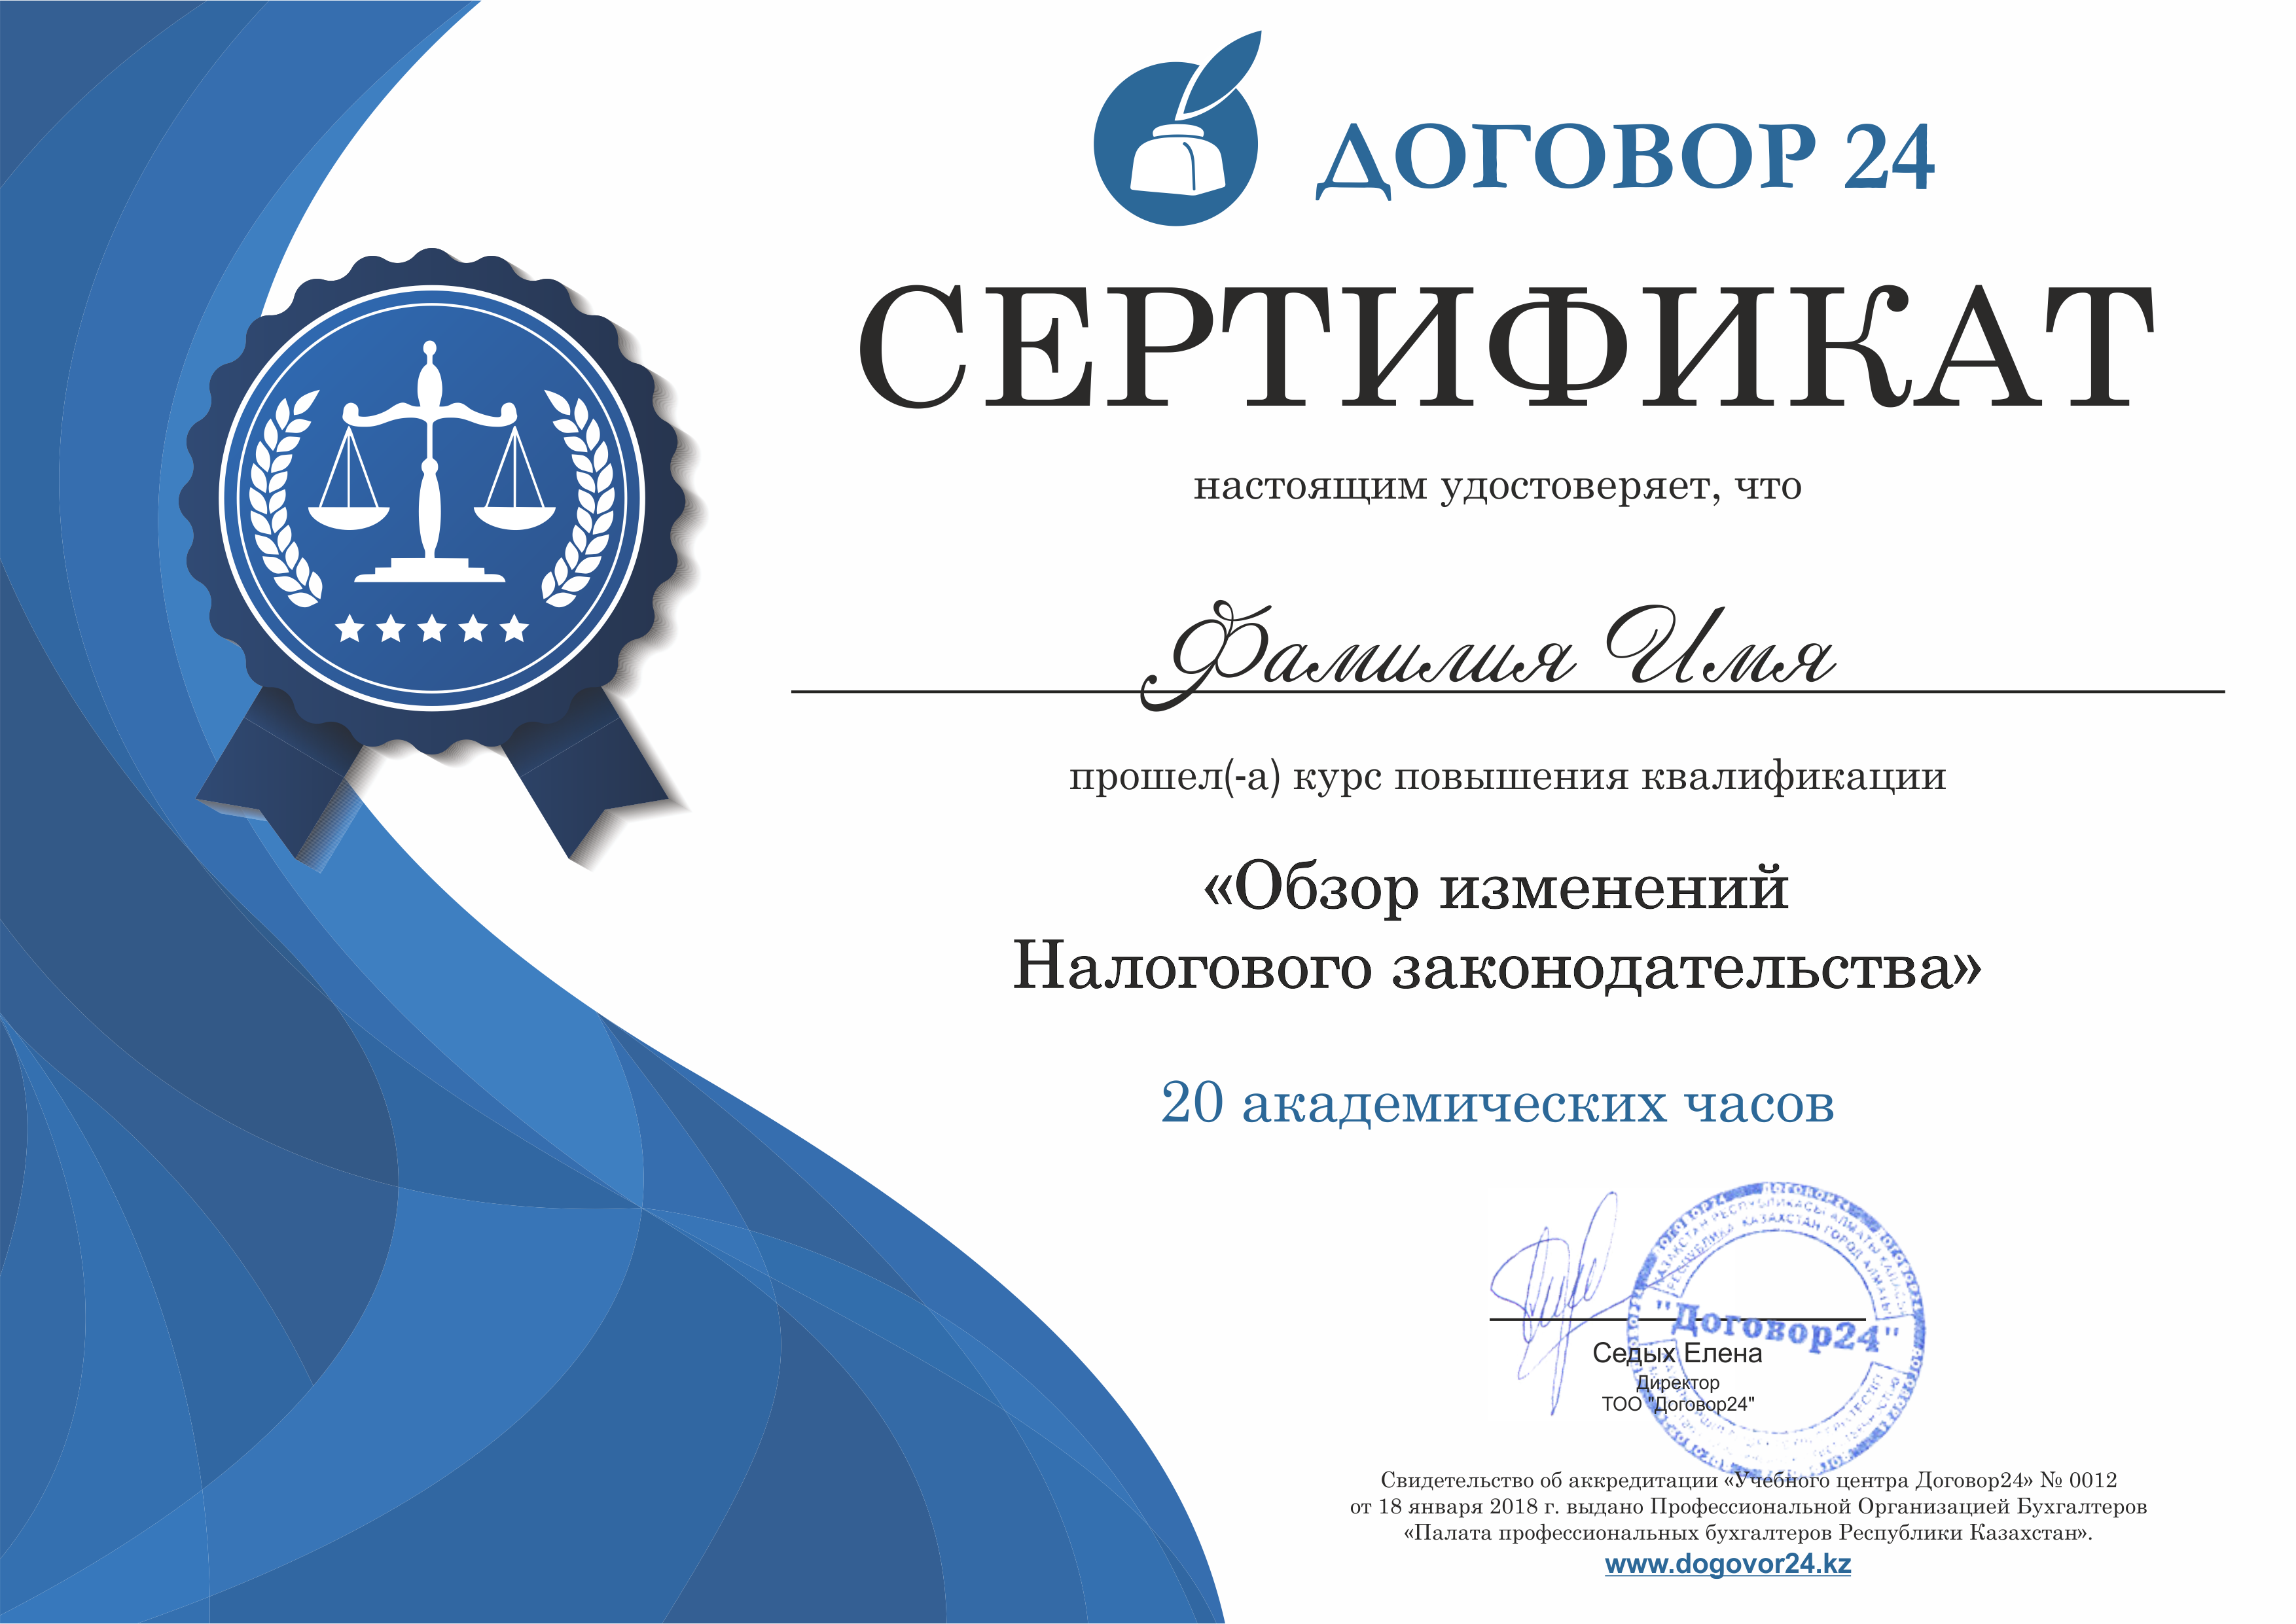 Сертификат парада вебинаров